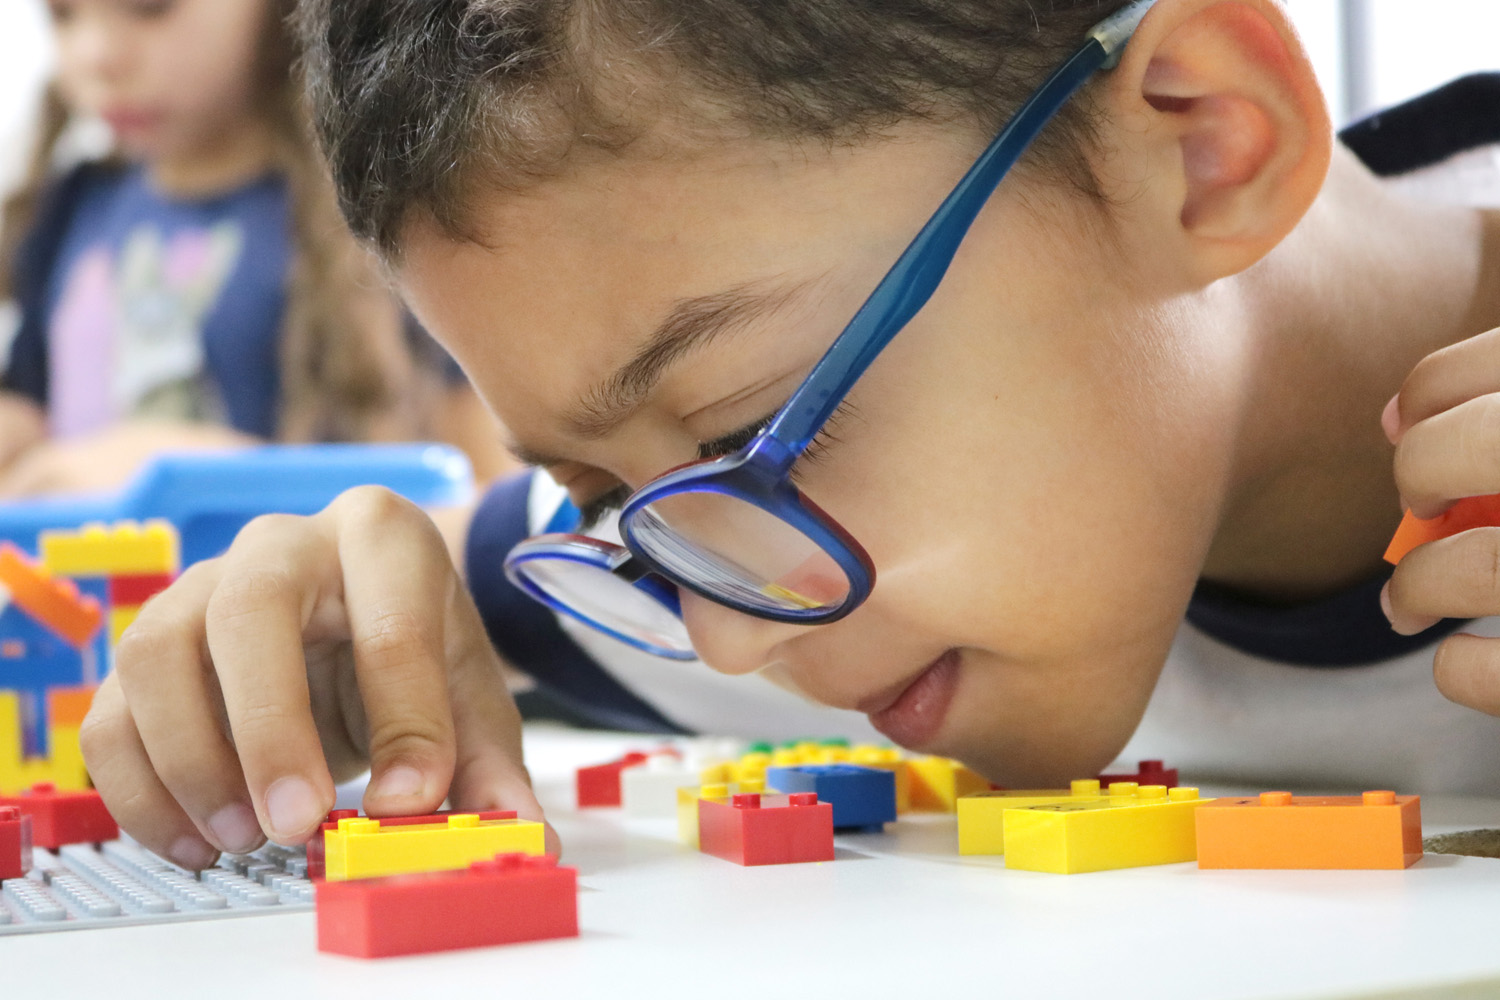 Descrição da imagem: foto de um garoto manuseando peças do LEGO Braille Bricks. Ele está de perfil, usa óculos e tem o rosto bem próximo às peças, com o queixo sobre a mesa.